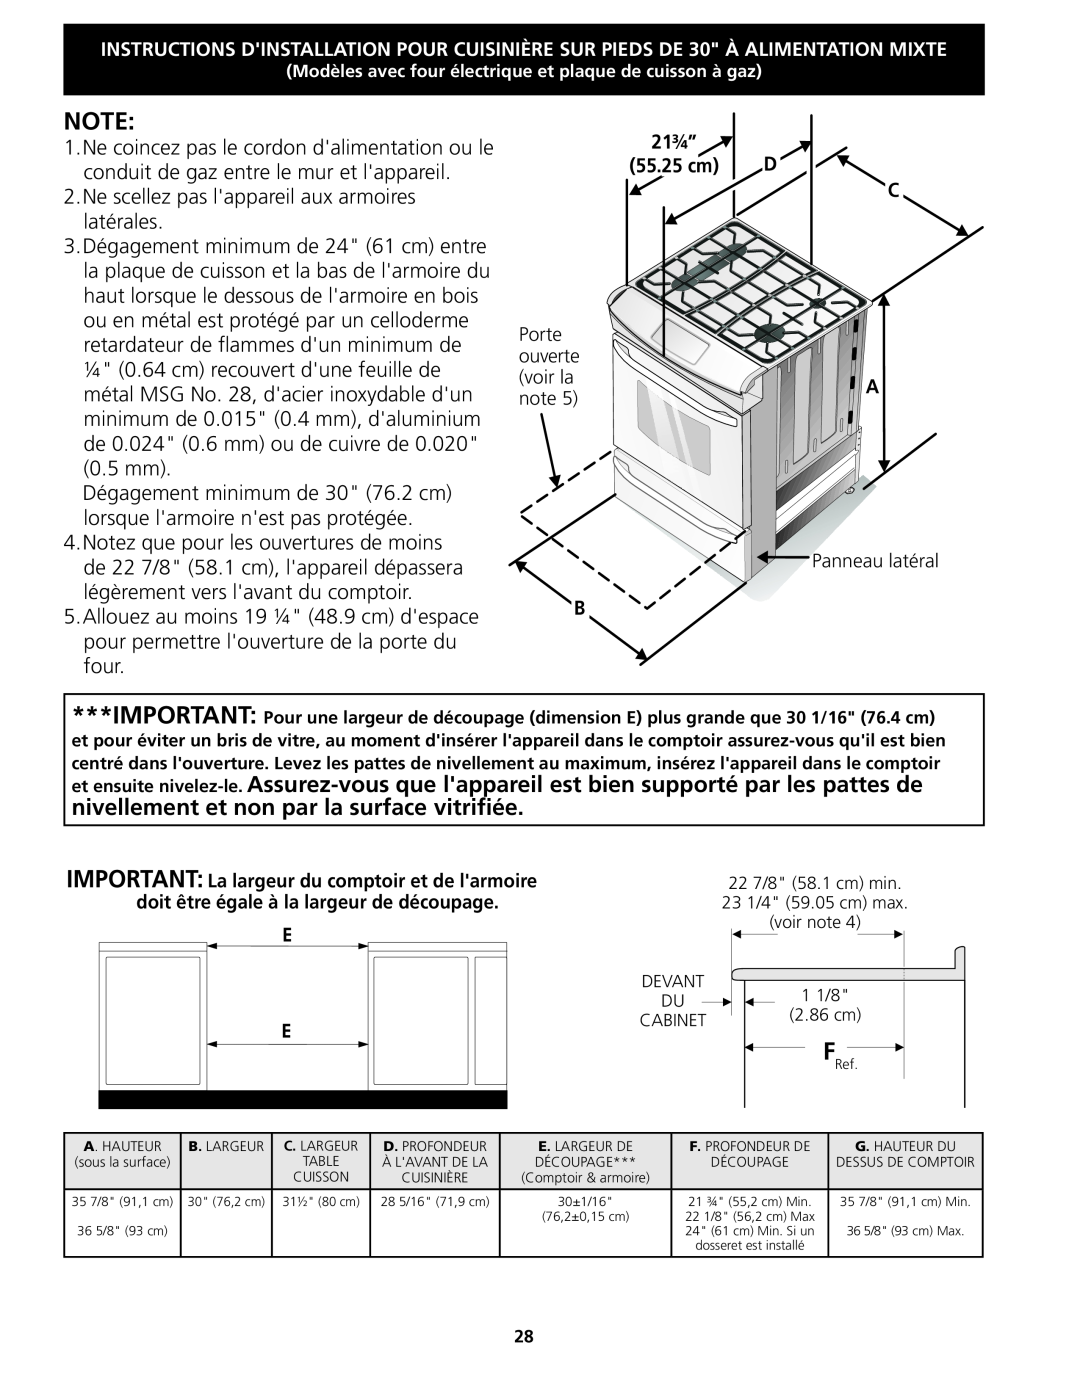 Frigidaire 318201679 (0903), CPDS3085KF installation instructions Ne scellez pas lappareil aux armoires 